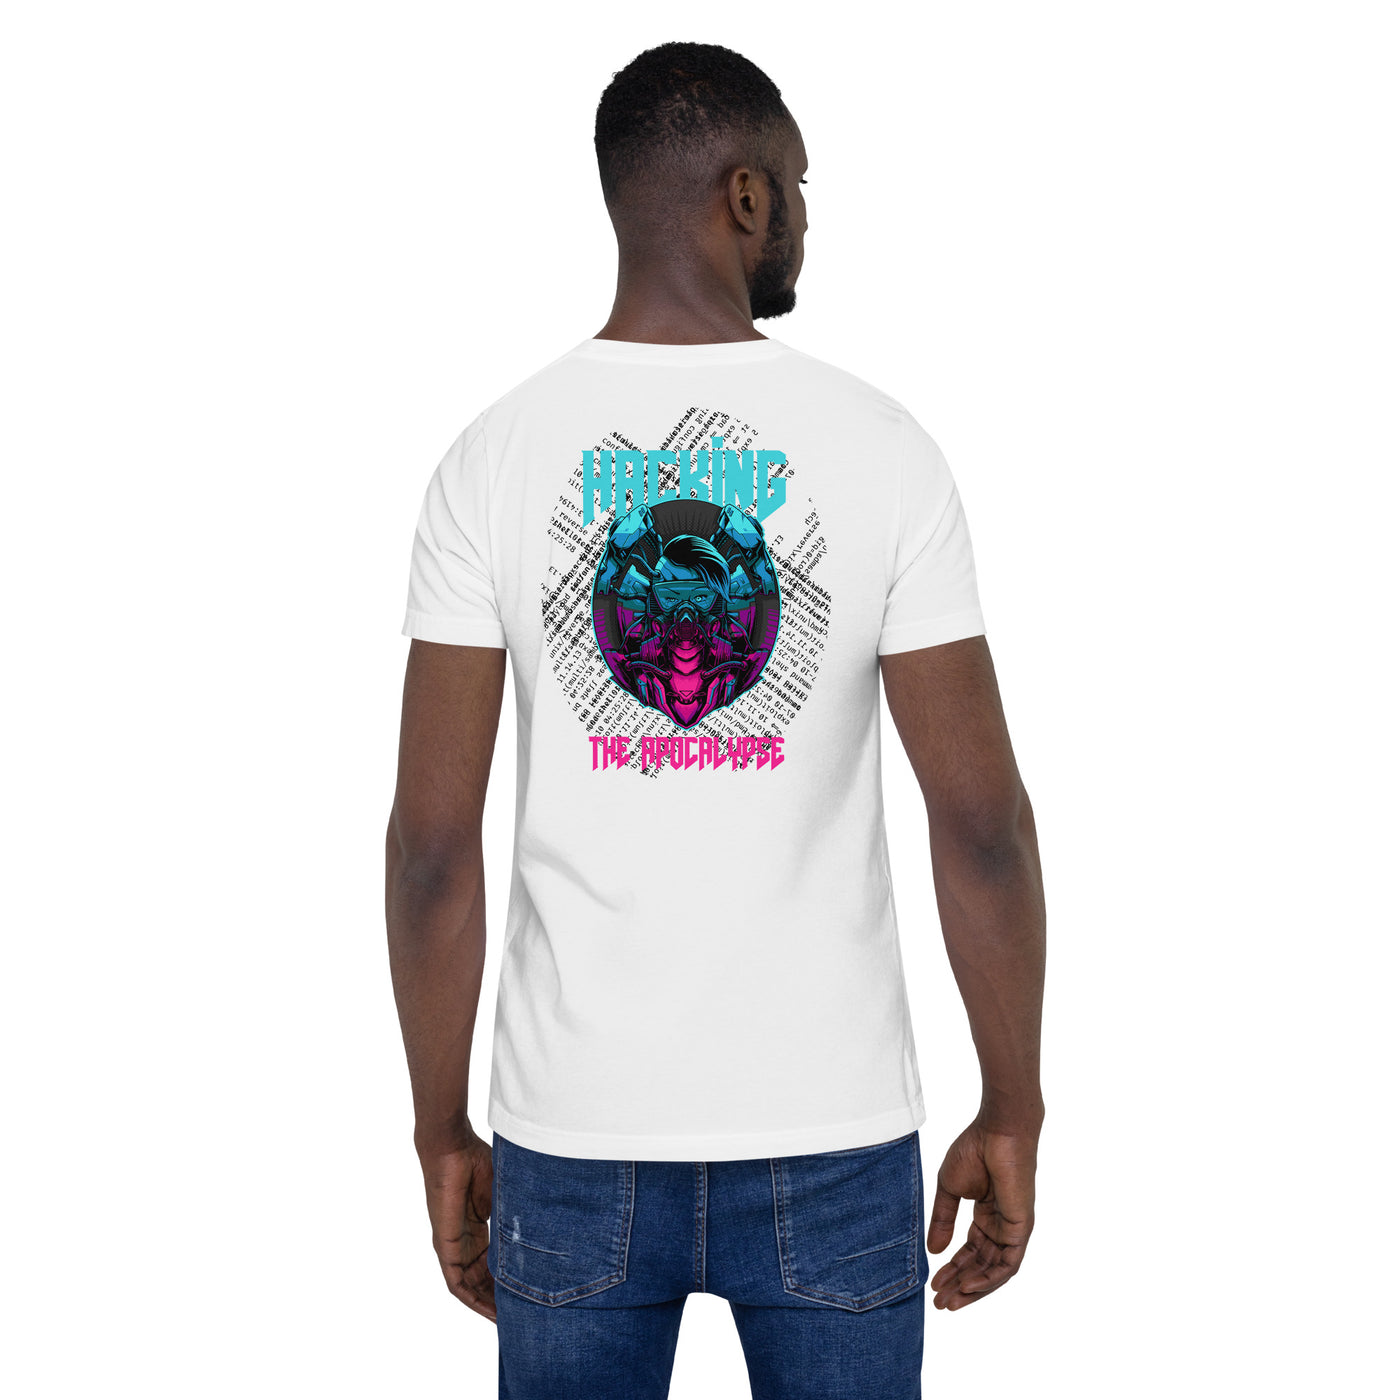 Hacking the apocalypse V2 - Unisex t-shirt ( Back Print )